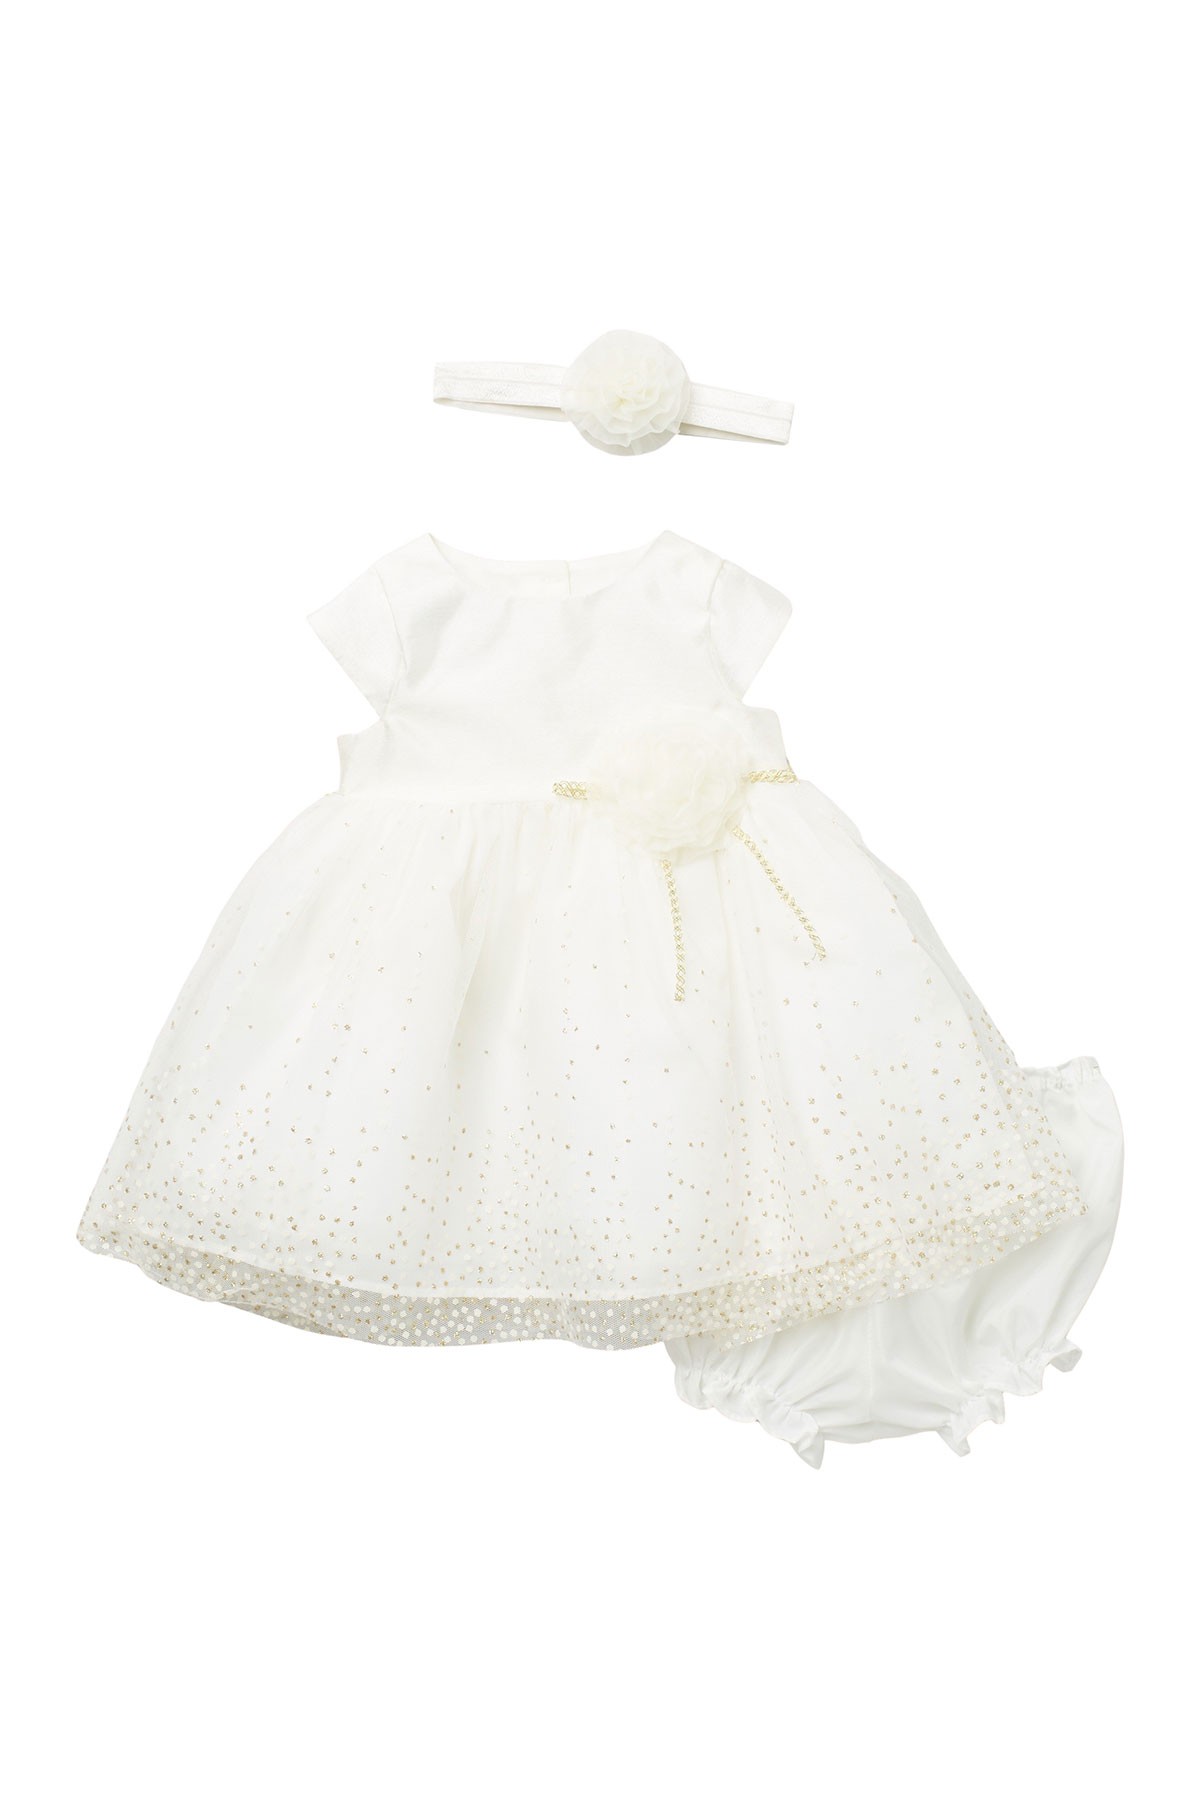 Rosette Waist Dress 3-Piece Set (Baby Girls 3-24M) Pippa & Julie